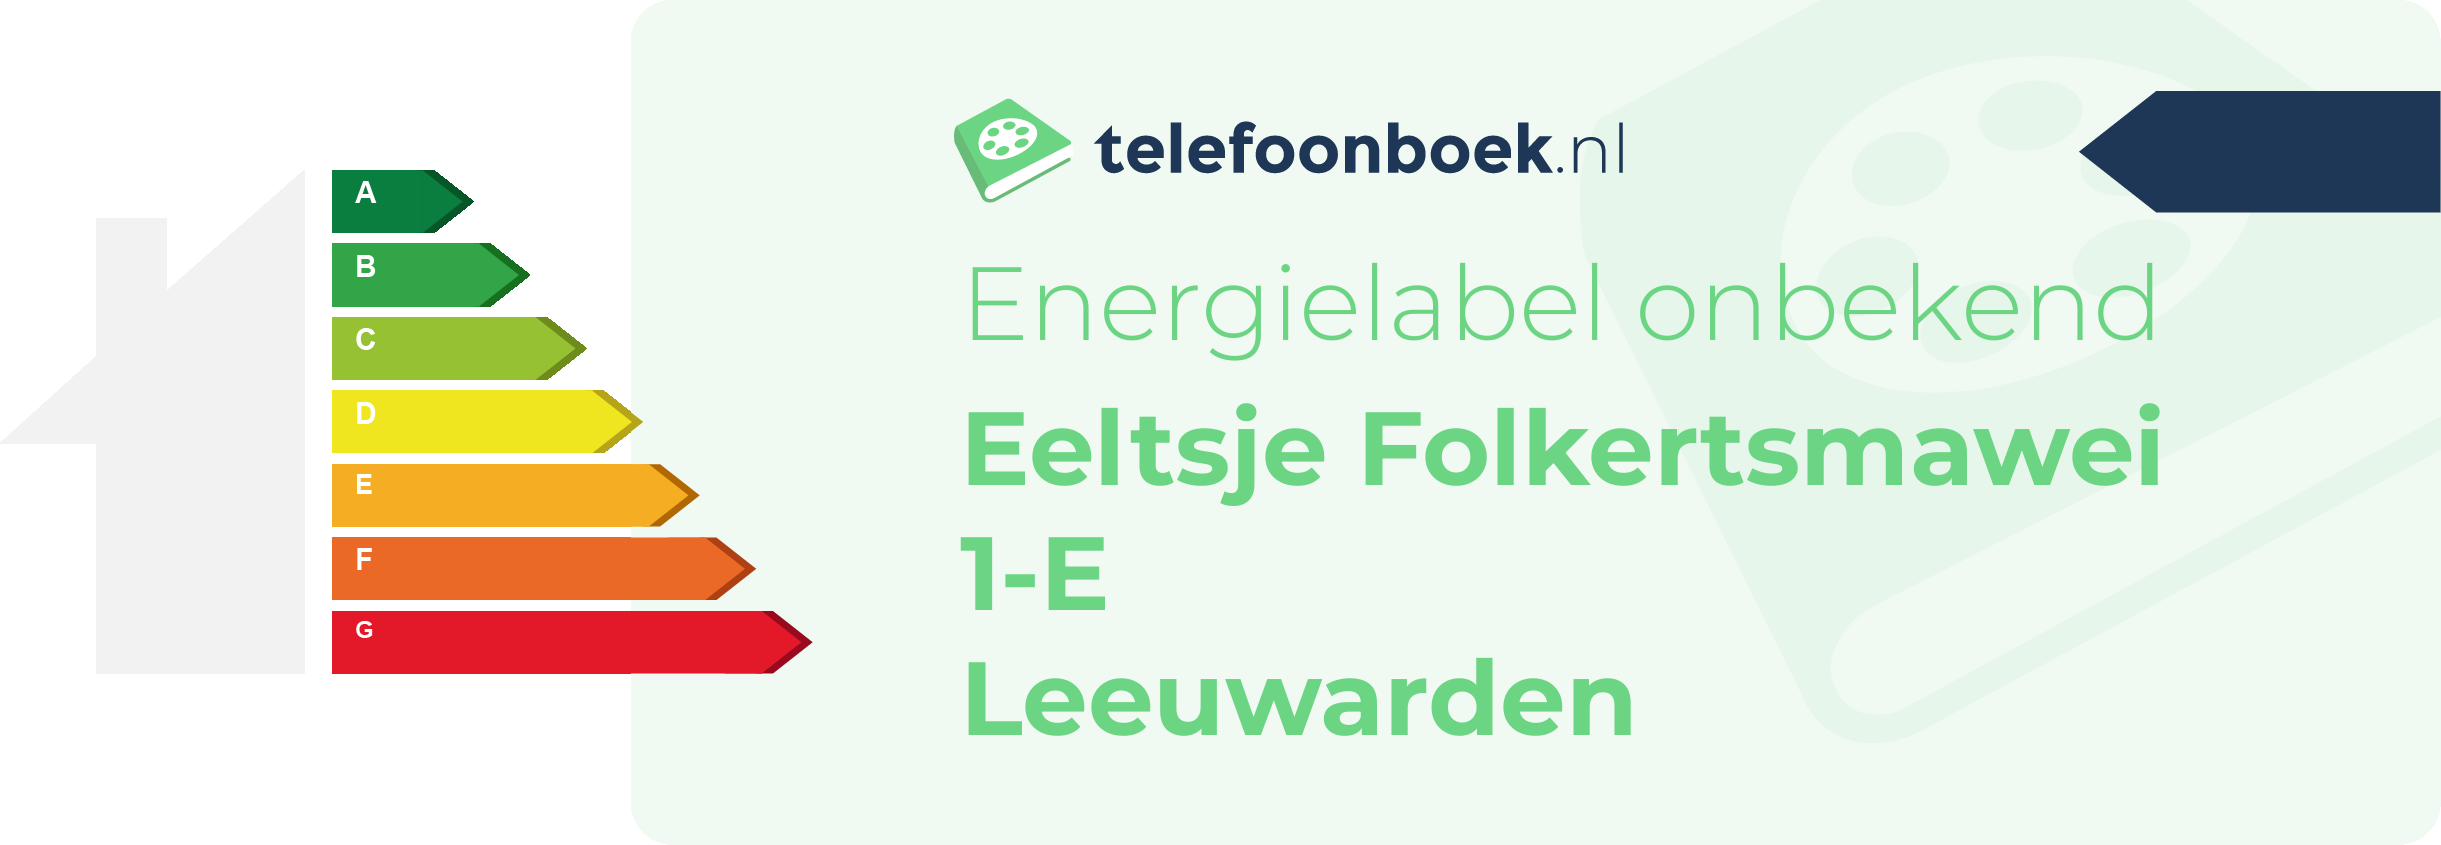 Energielabel Eeltsje Folkertsmawei 1-E Leeuwarden